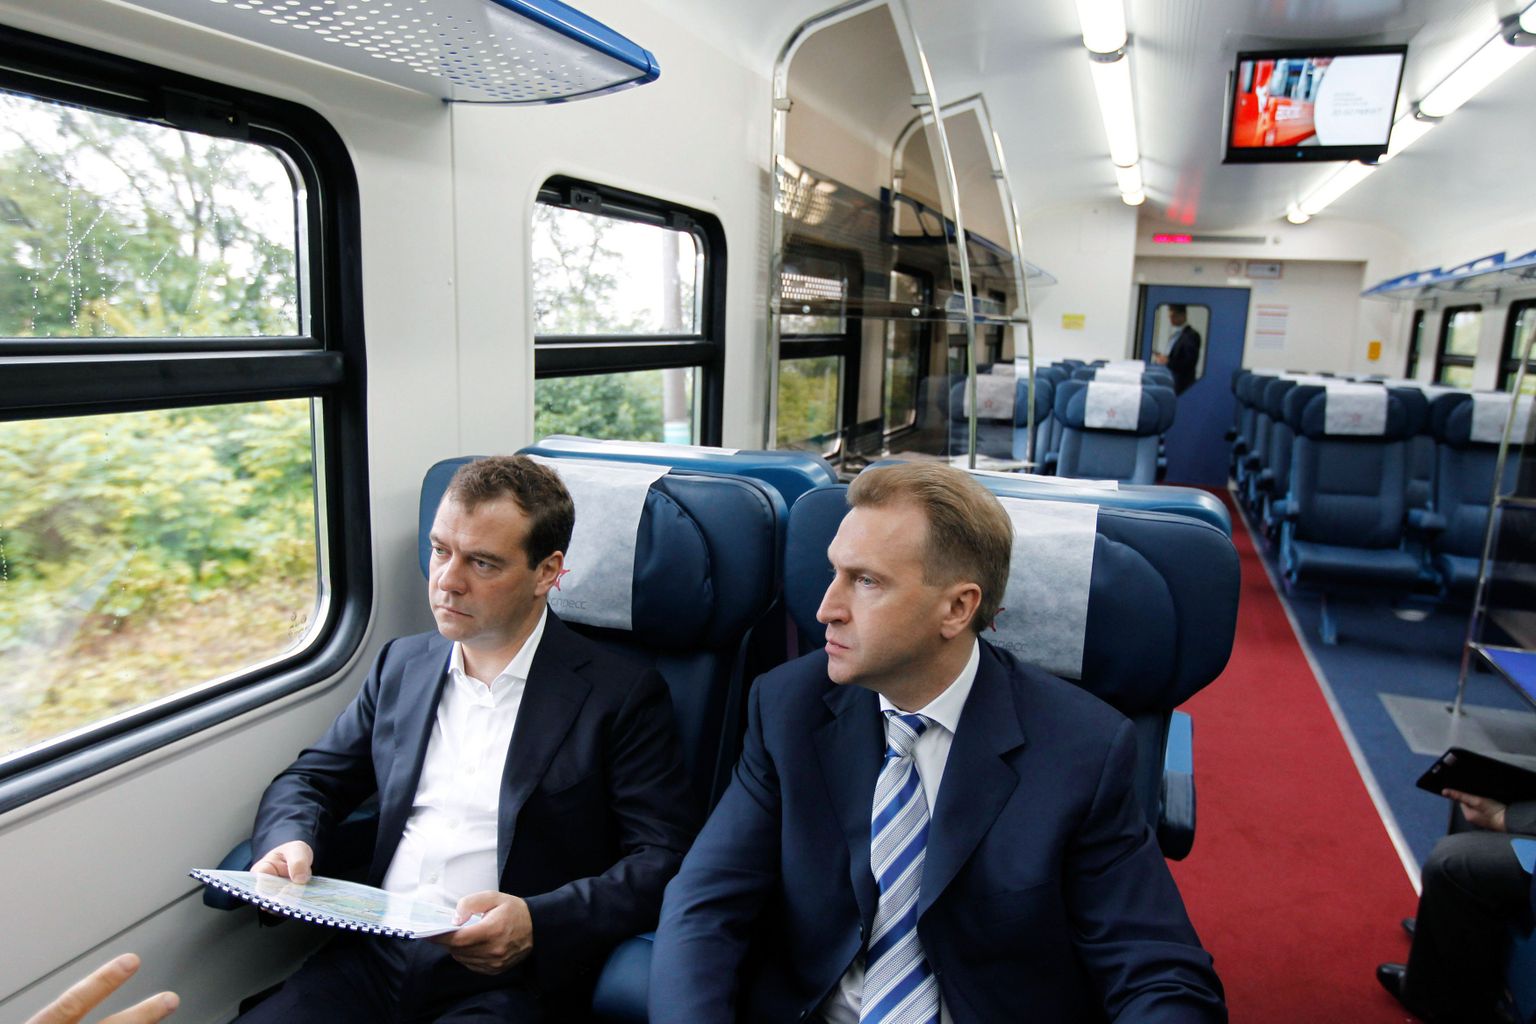 Venemaa peaminister Dmitri Medvedev  koos esimese asepeaministri Igor Šuvaloviga täna rongiga Vladivostoki rahvusvahelise lennujaama poole kihutamas,et sealt Kuriilidele lennata.